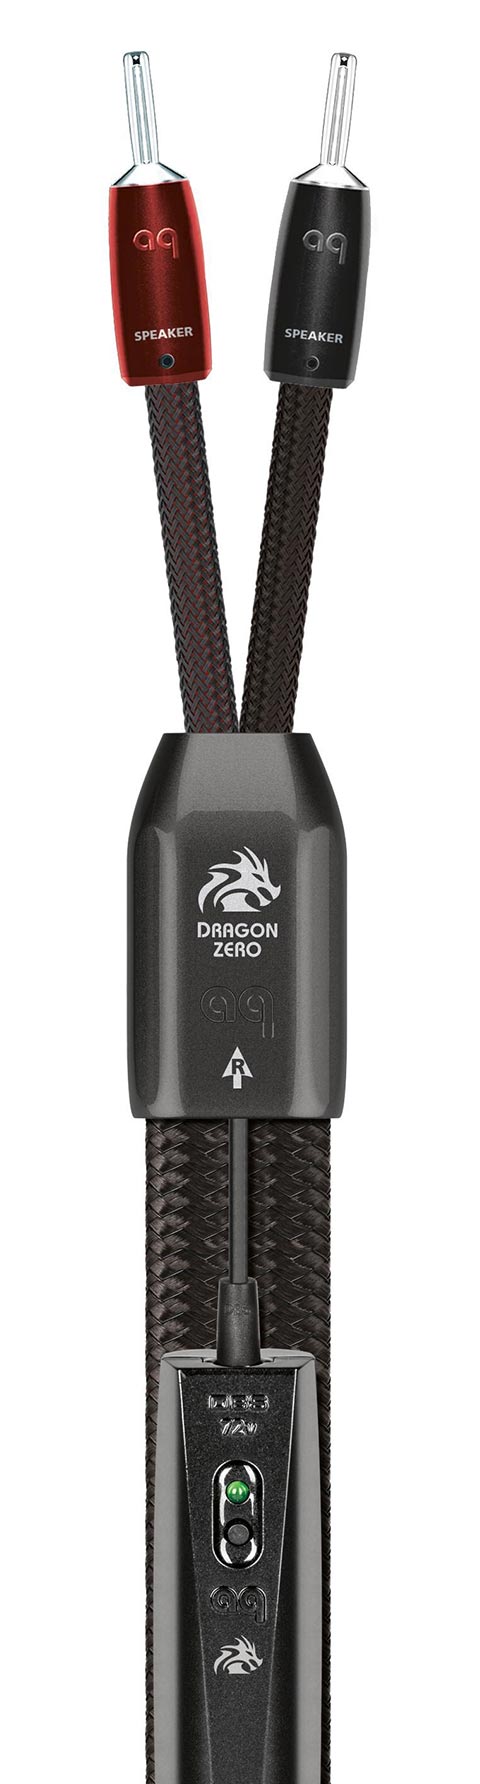 AudioQuest Dragon Zero Lautsprecherkabel 2 Meter